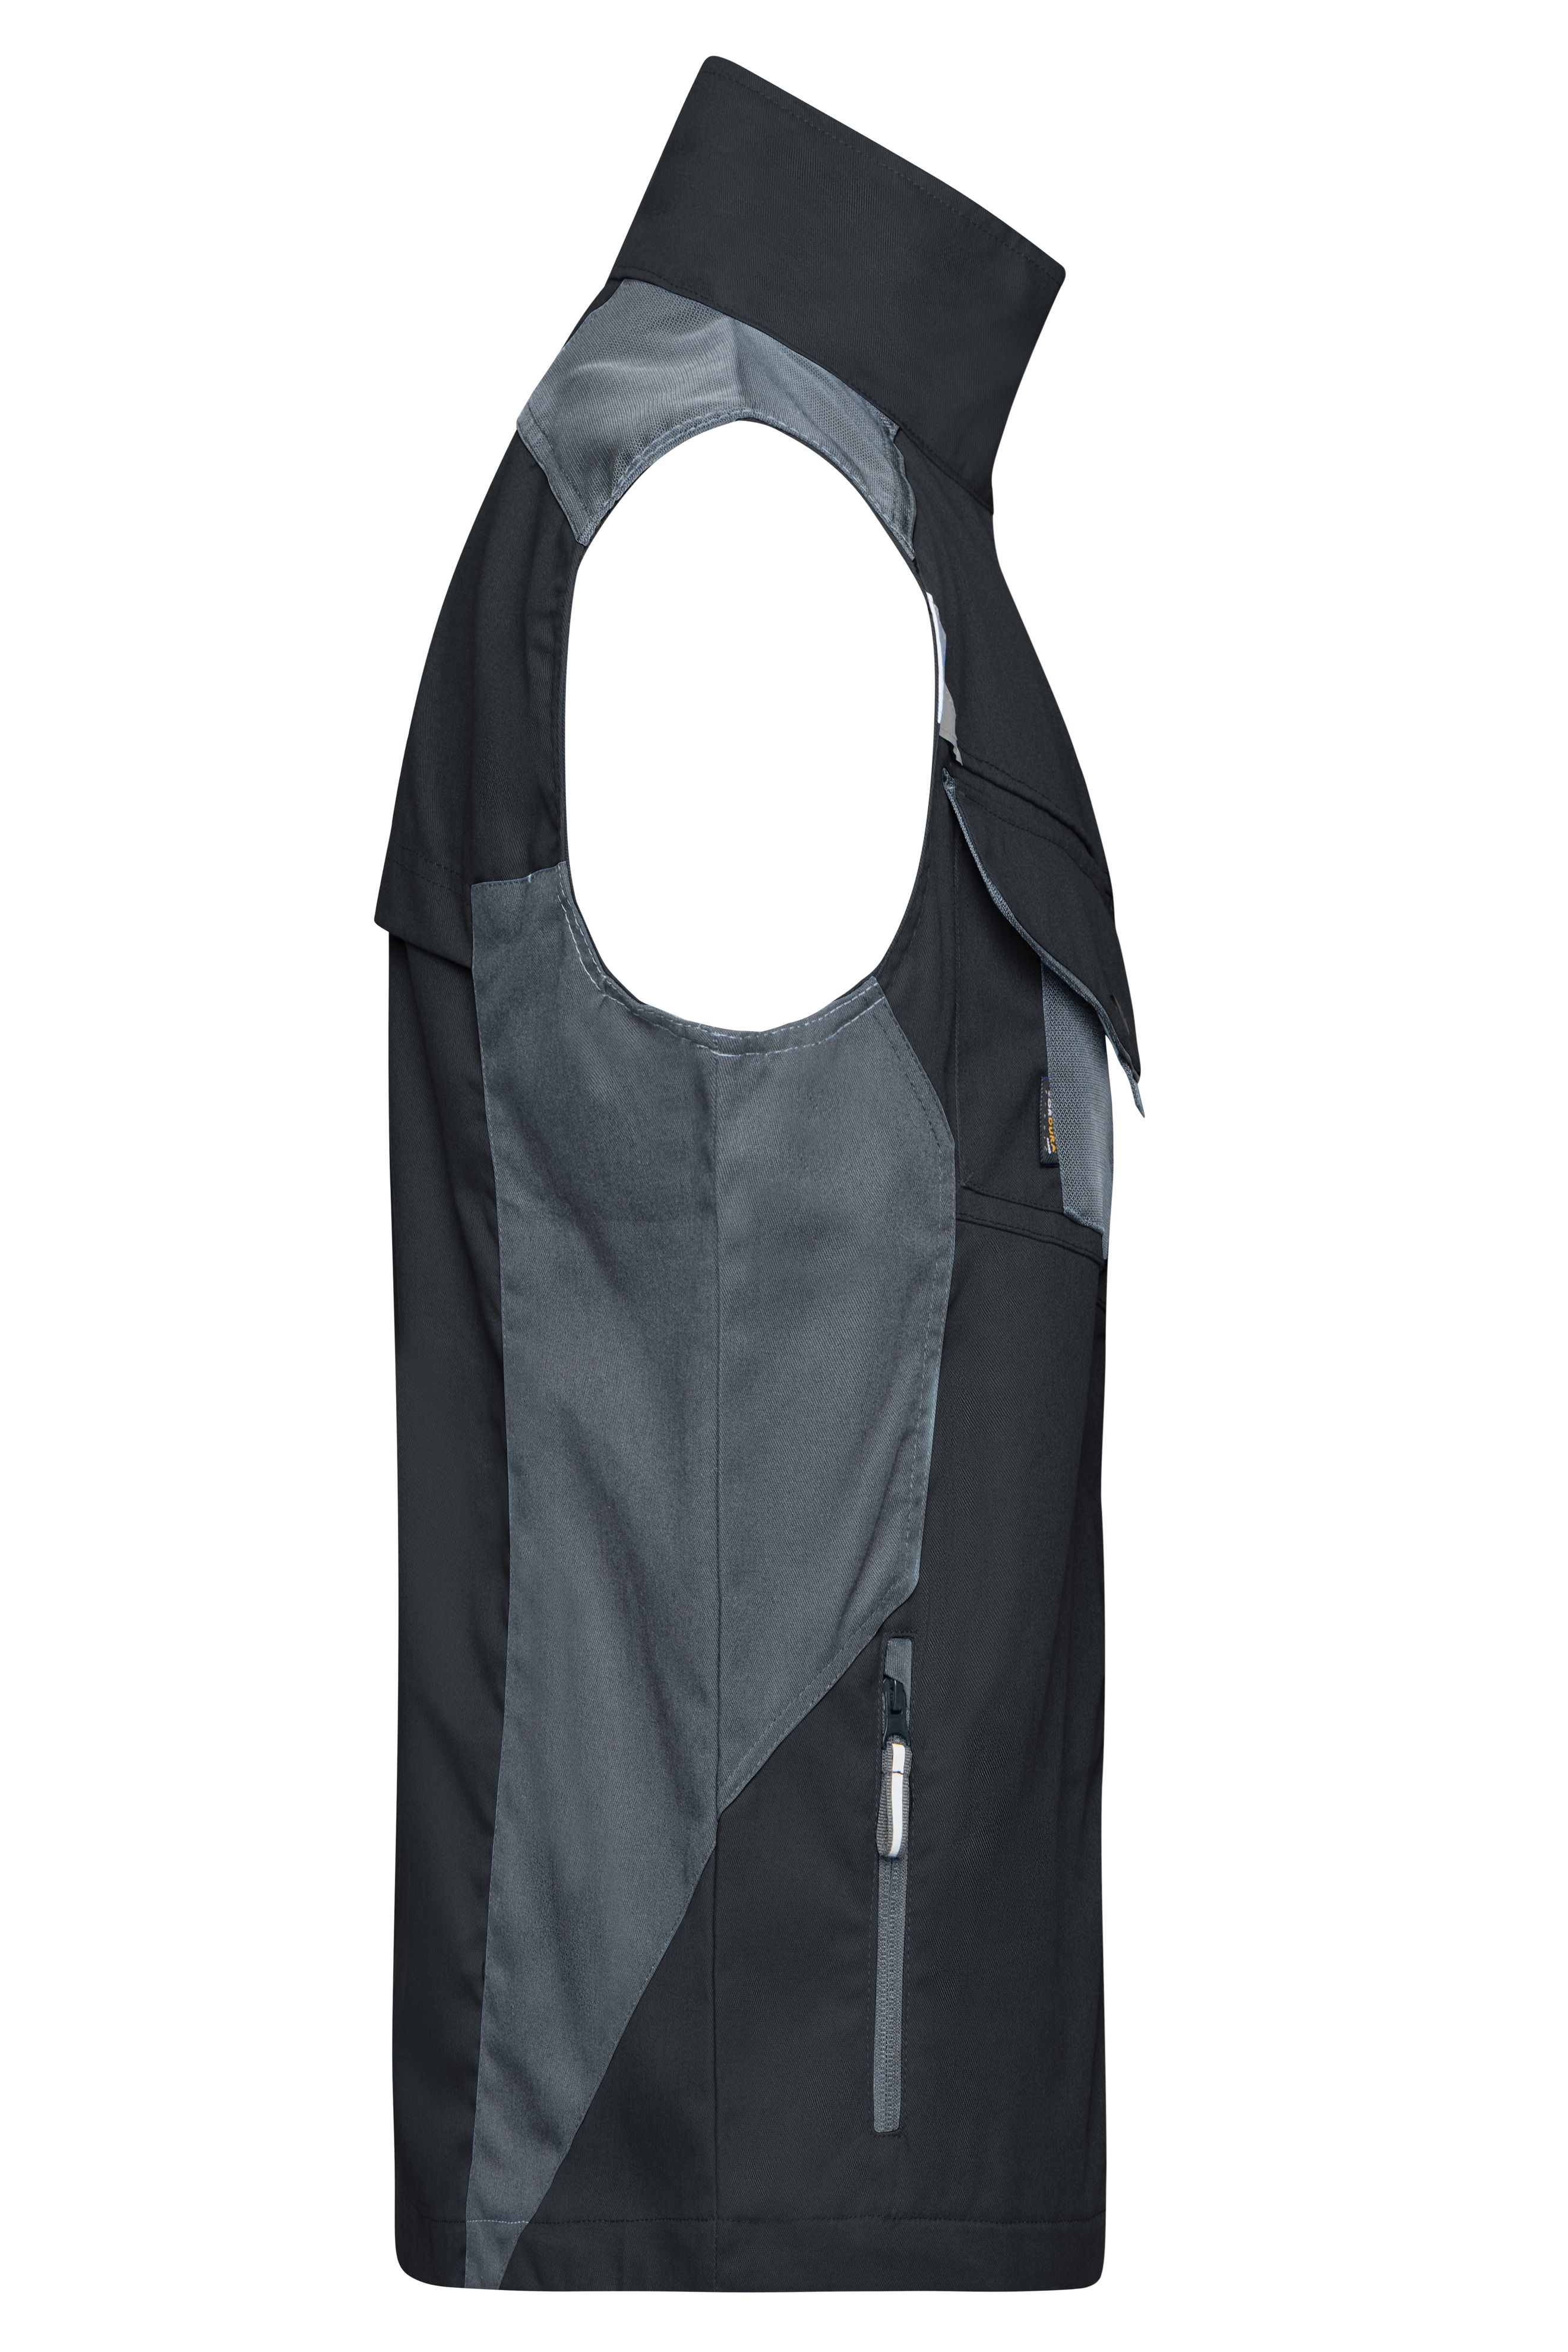 Workwear Vest - STRONG - JN822 Professionelle Weste mit hochwertiger Ausstattung